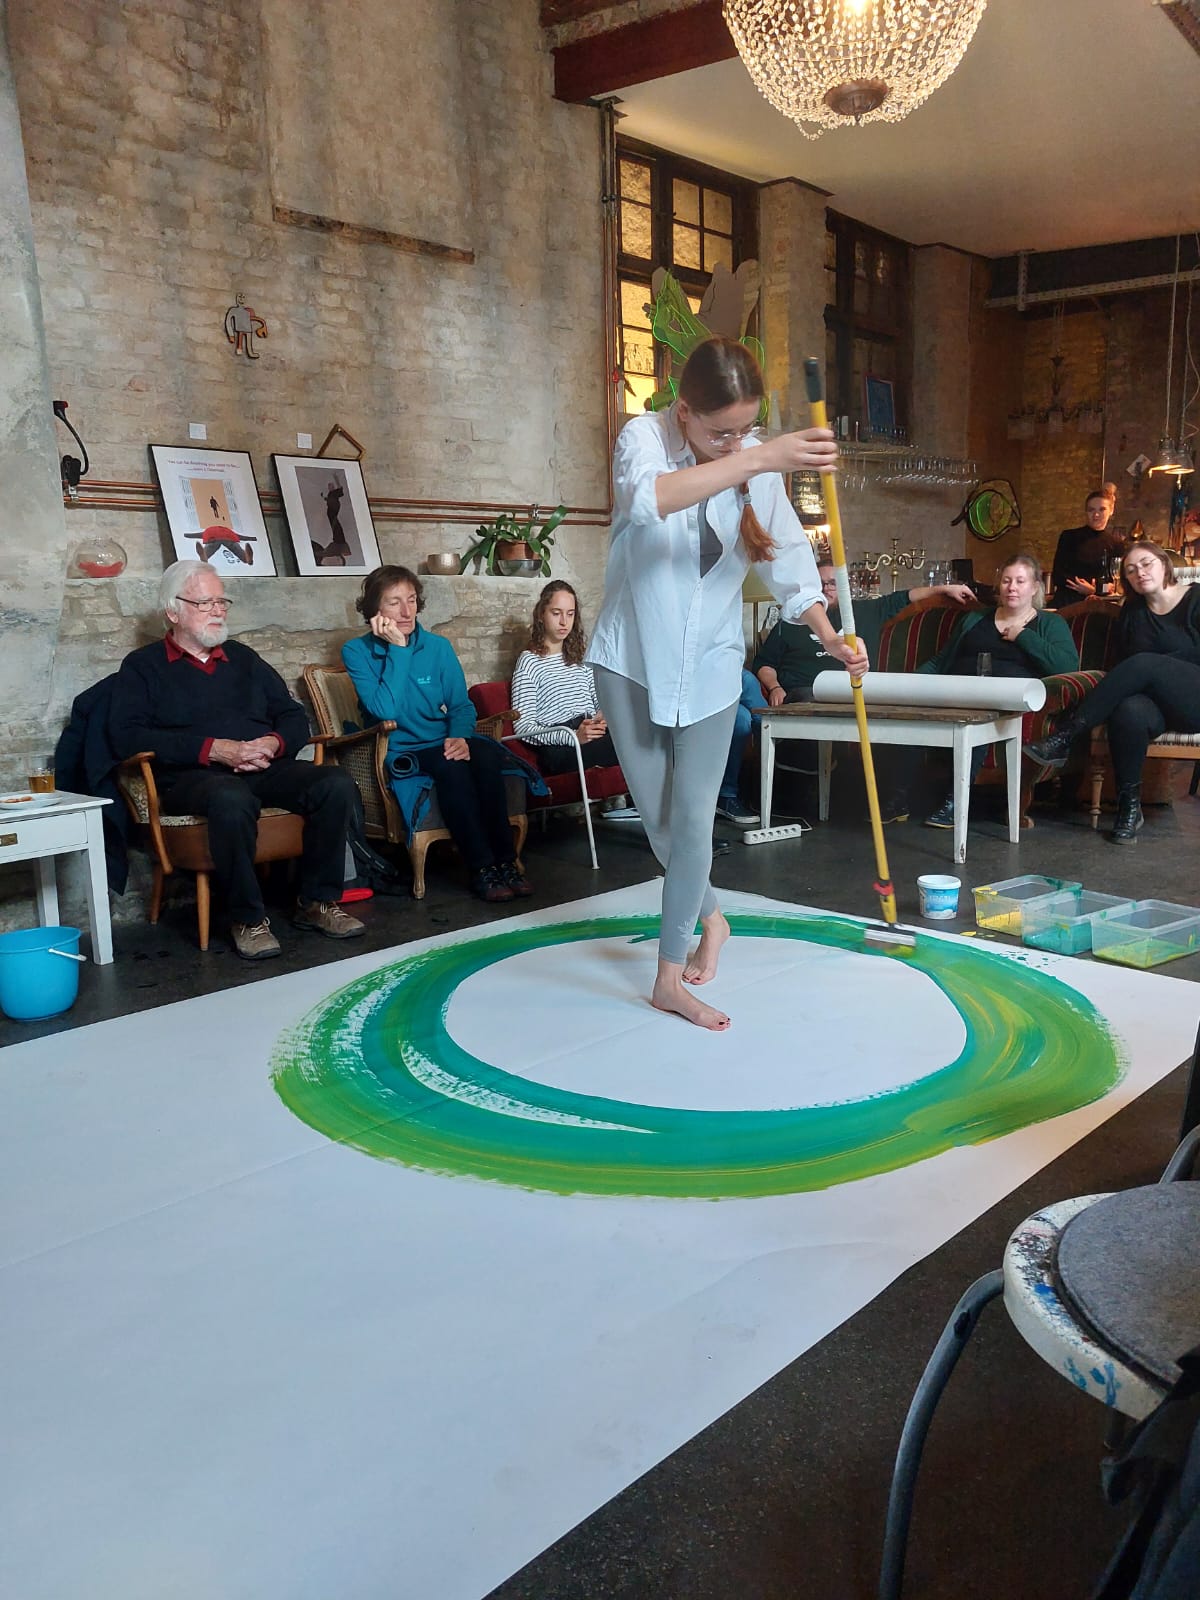 Eine Frau steht auf einem übergroßen weißen Papier und malt mit unterschiedlichen Grüntönen einen Kreis um sich herum. Auf Sesseln und einem Sofa sitzen Besuchende des Kunstevents zur Menschenwürde und schauen zu.